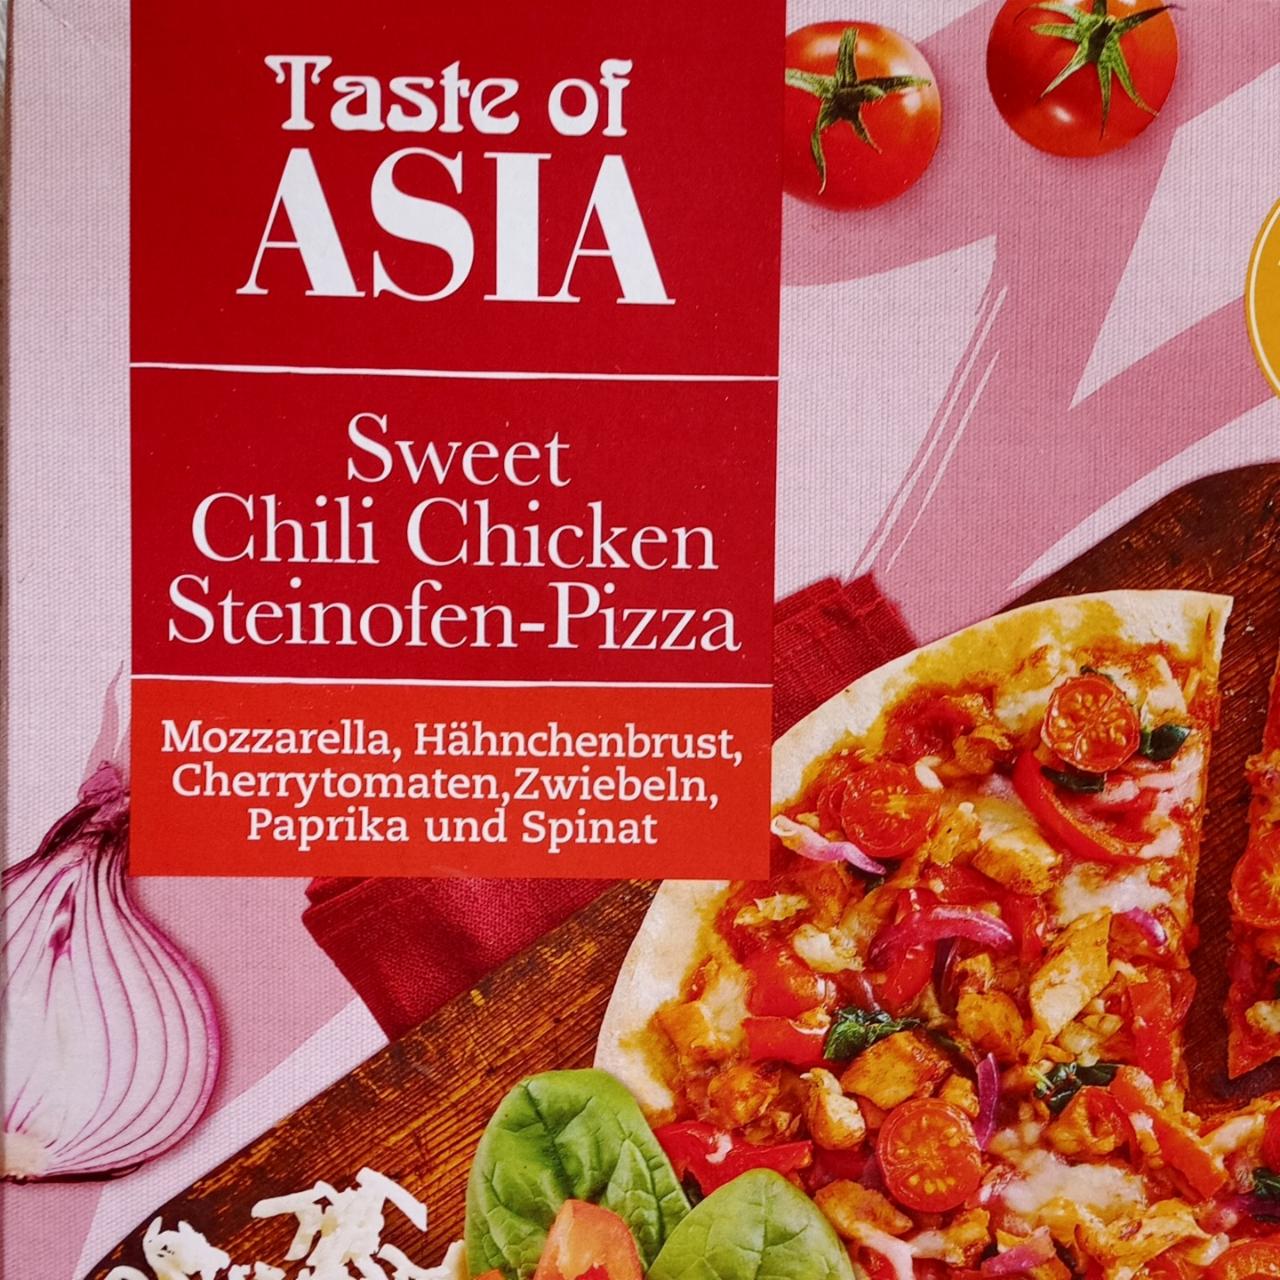 Fotografie - Sweet Chili Chicken Steinofen Pizza Taste of Asia